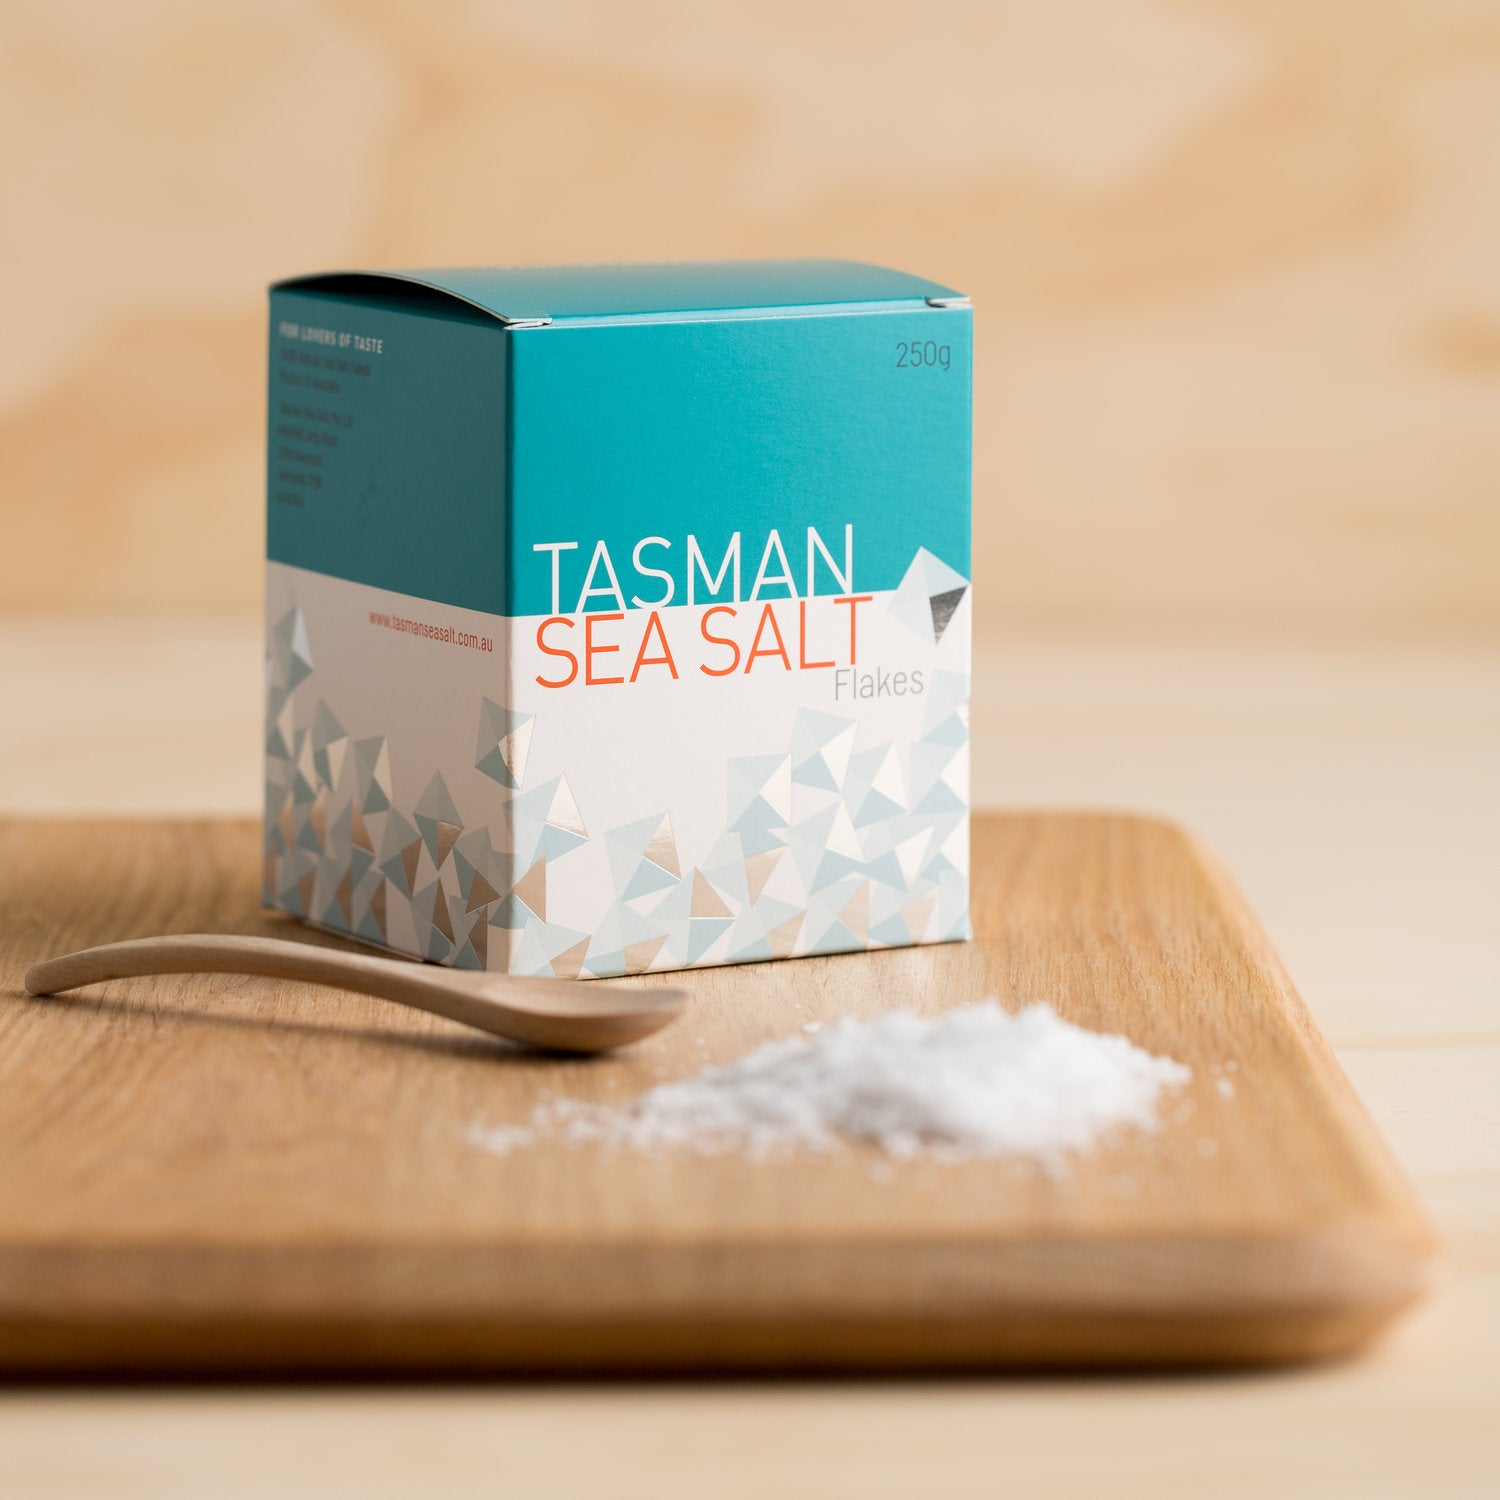 Tasman sea salt gift set